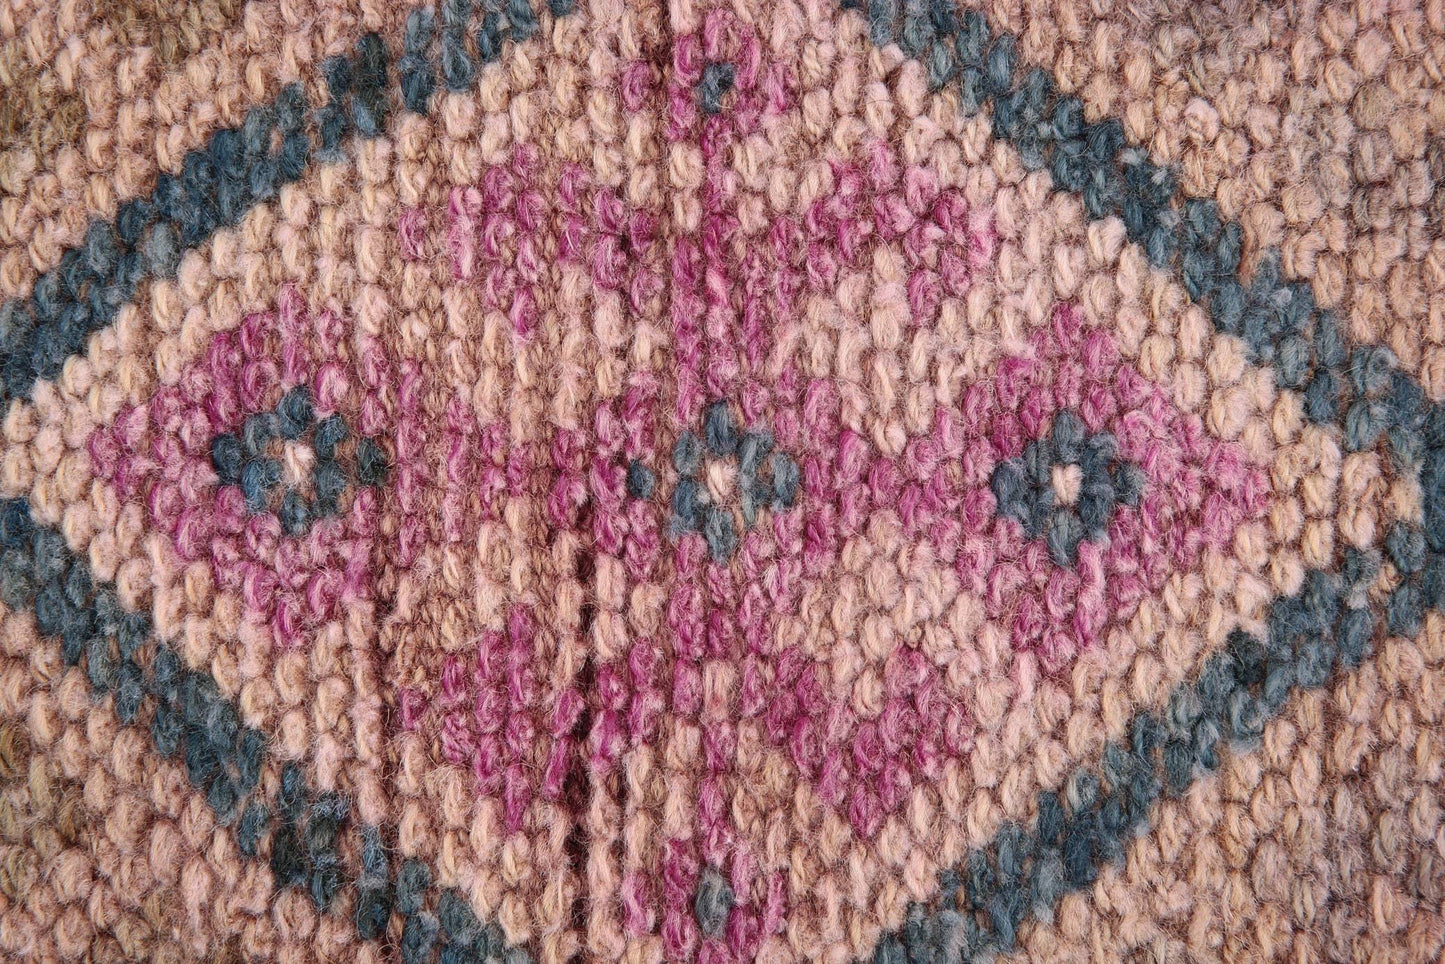 2' x 12' Pink Turkish Vintage Herki Rug  |  RugReform